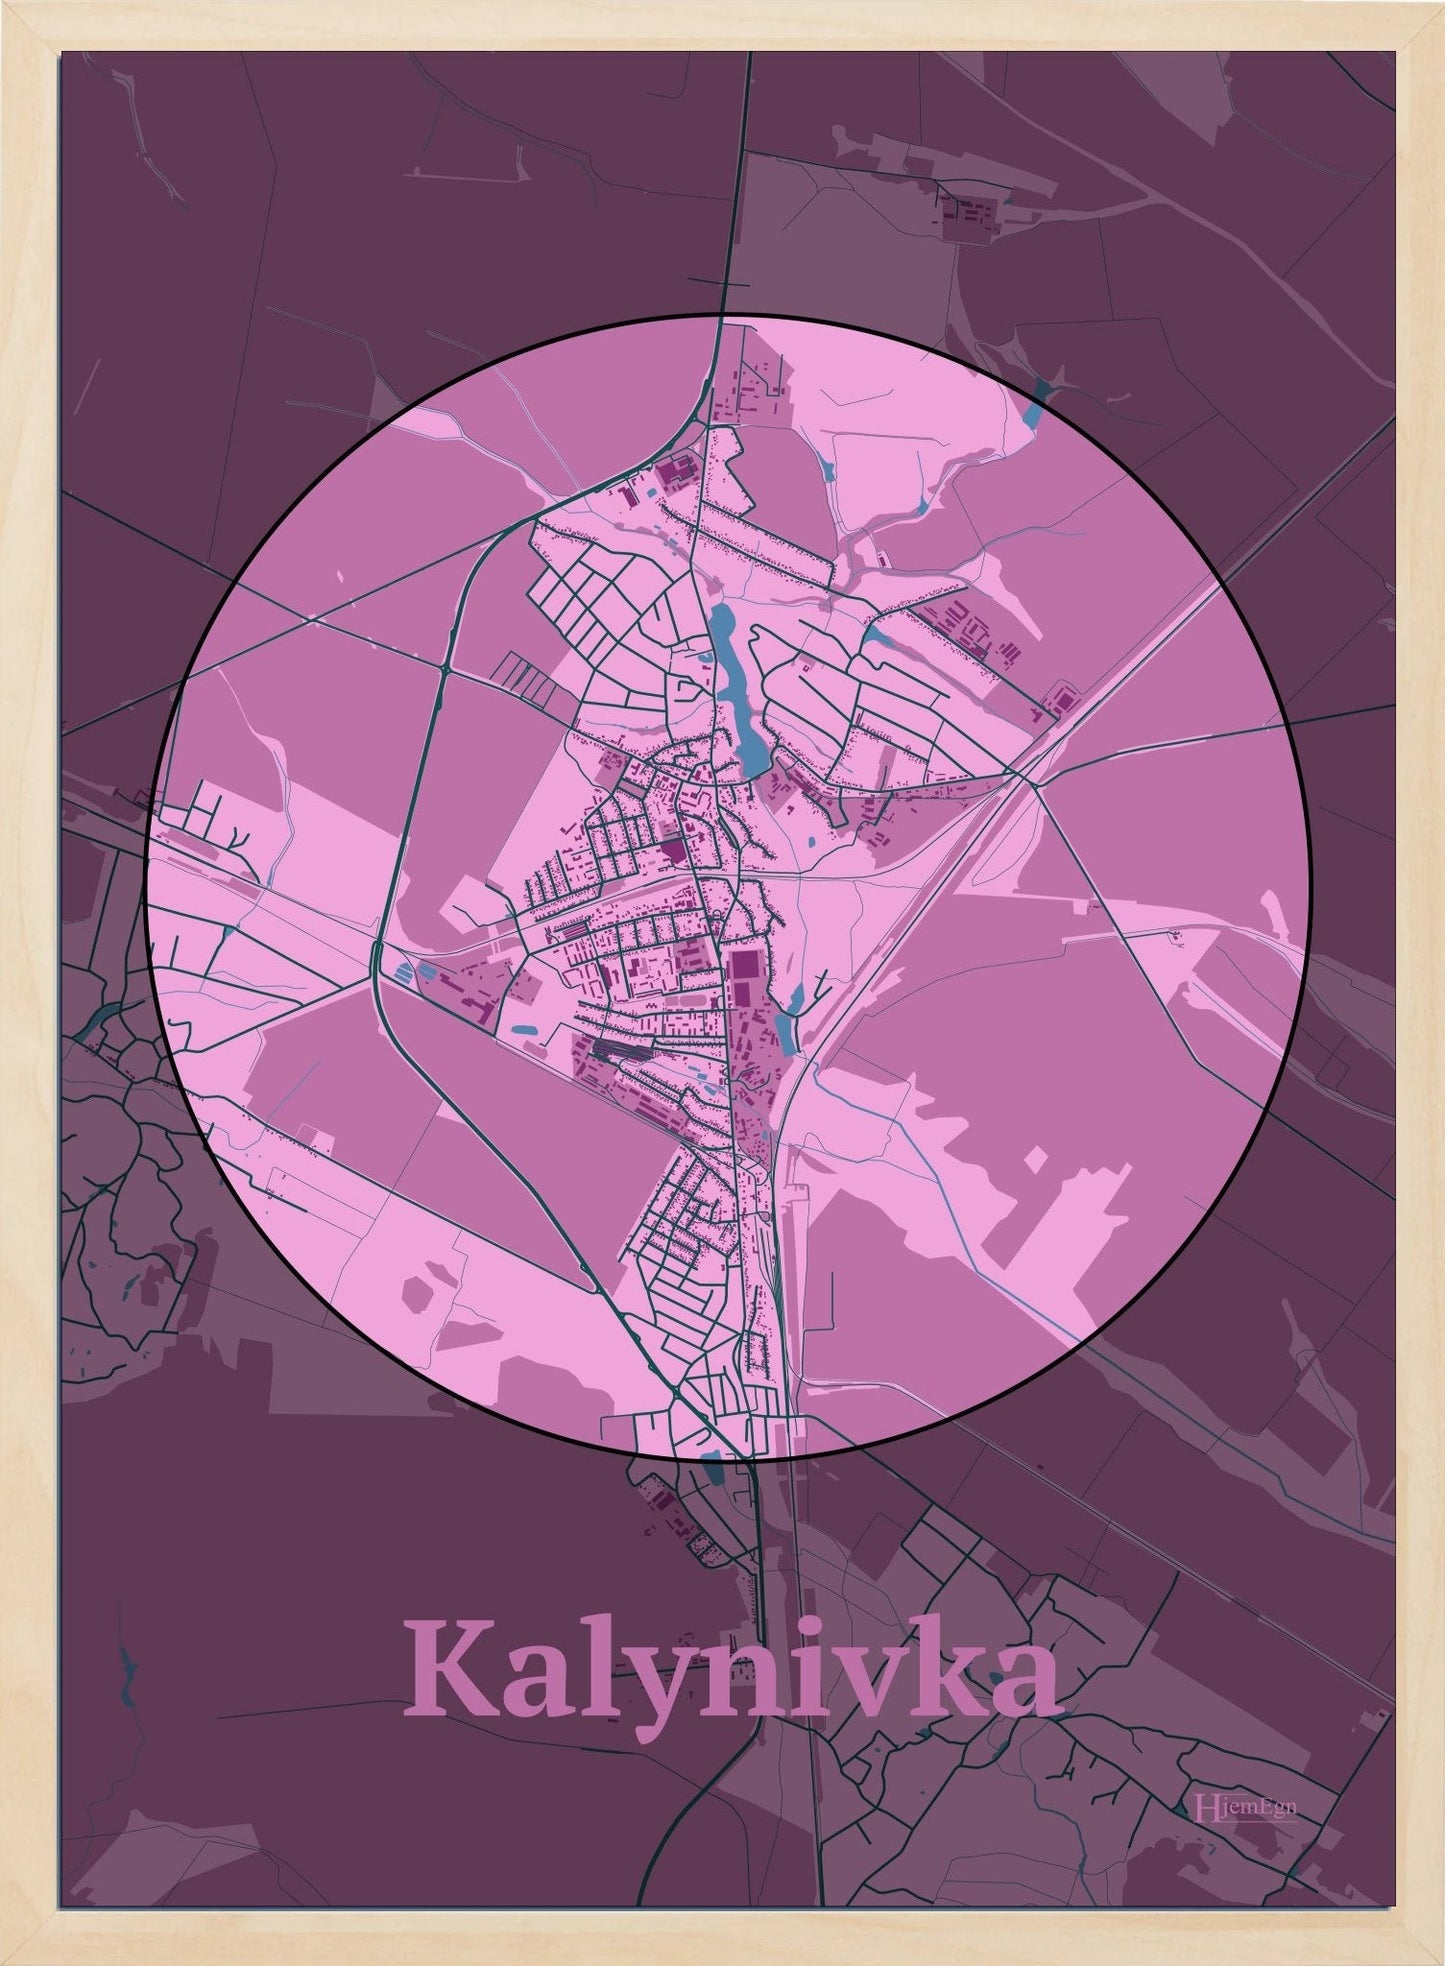 Kalynivka plakat i farve pastel rød og HjemEgn.dk design centrum. Design bykort for Kalynivka